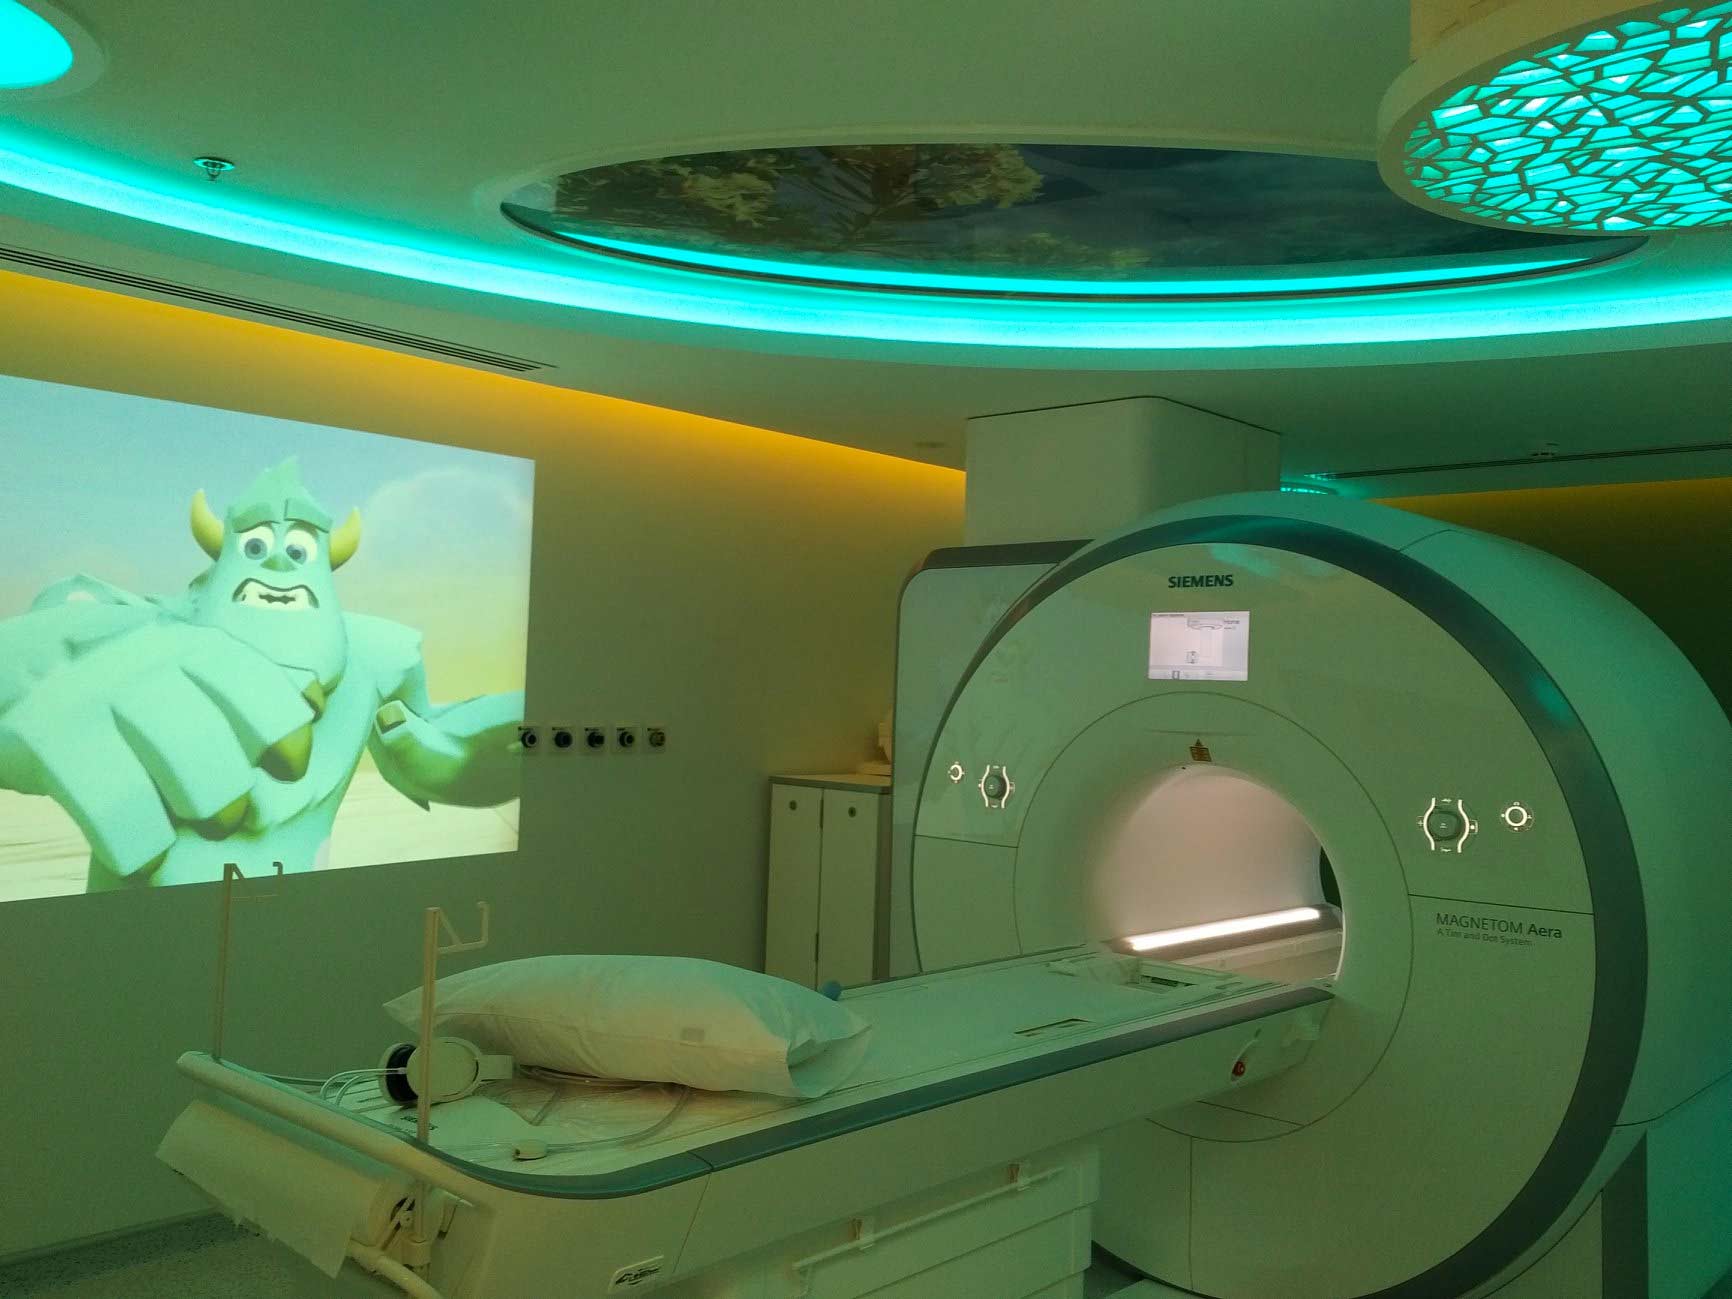 MRI Projector, mri compatible projector, MRI ambience,MRI Compatible, MRI compatible tv